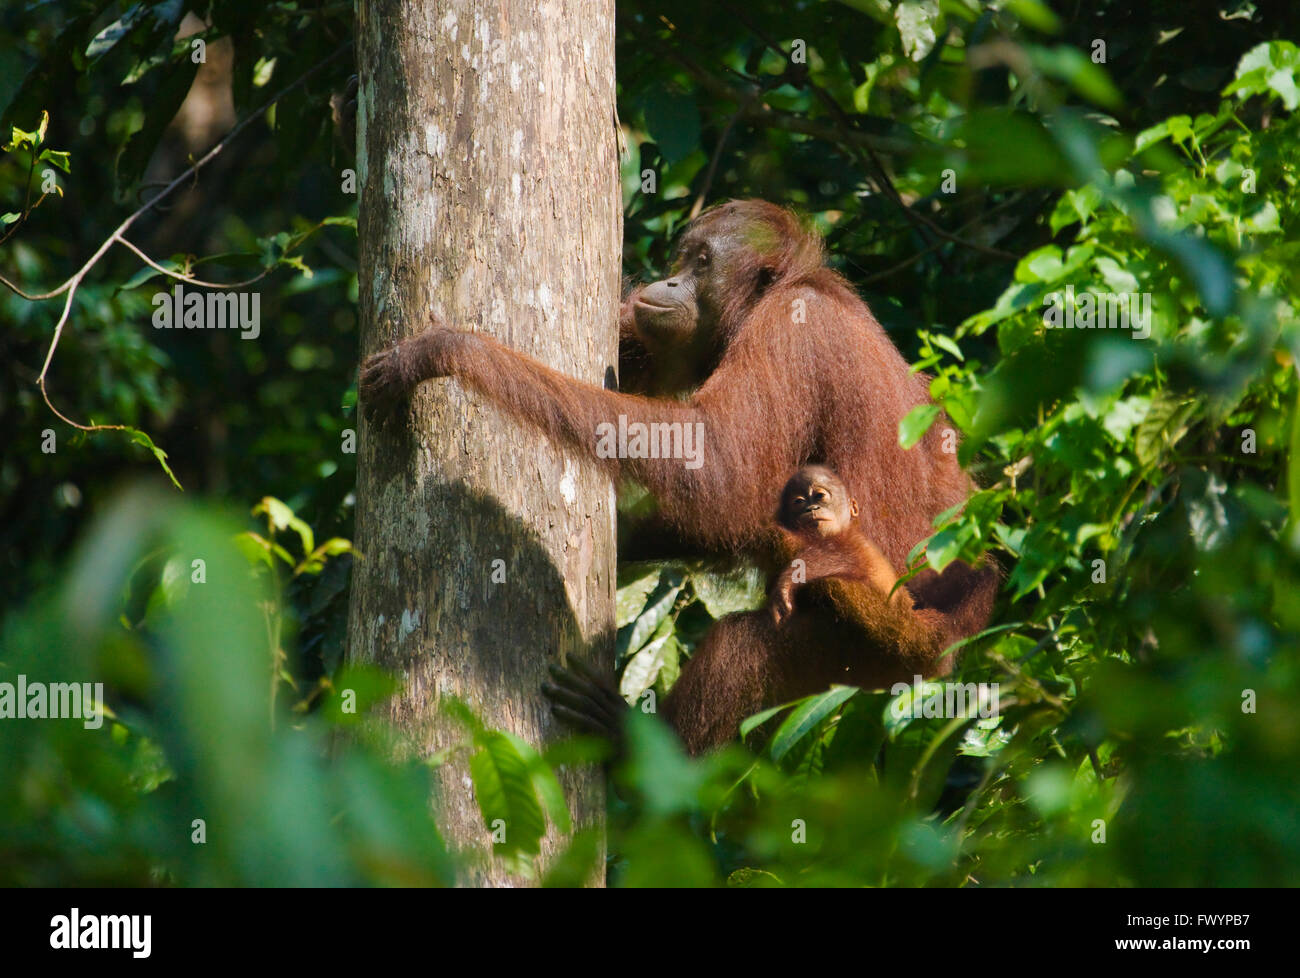 Les orangs-outans, mère de cub, dans la jungle, Sandakan, Malaisie, Bornéo Banque D'Images